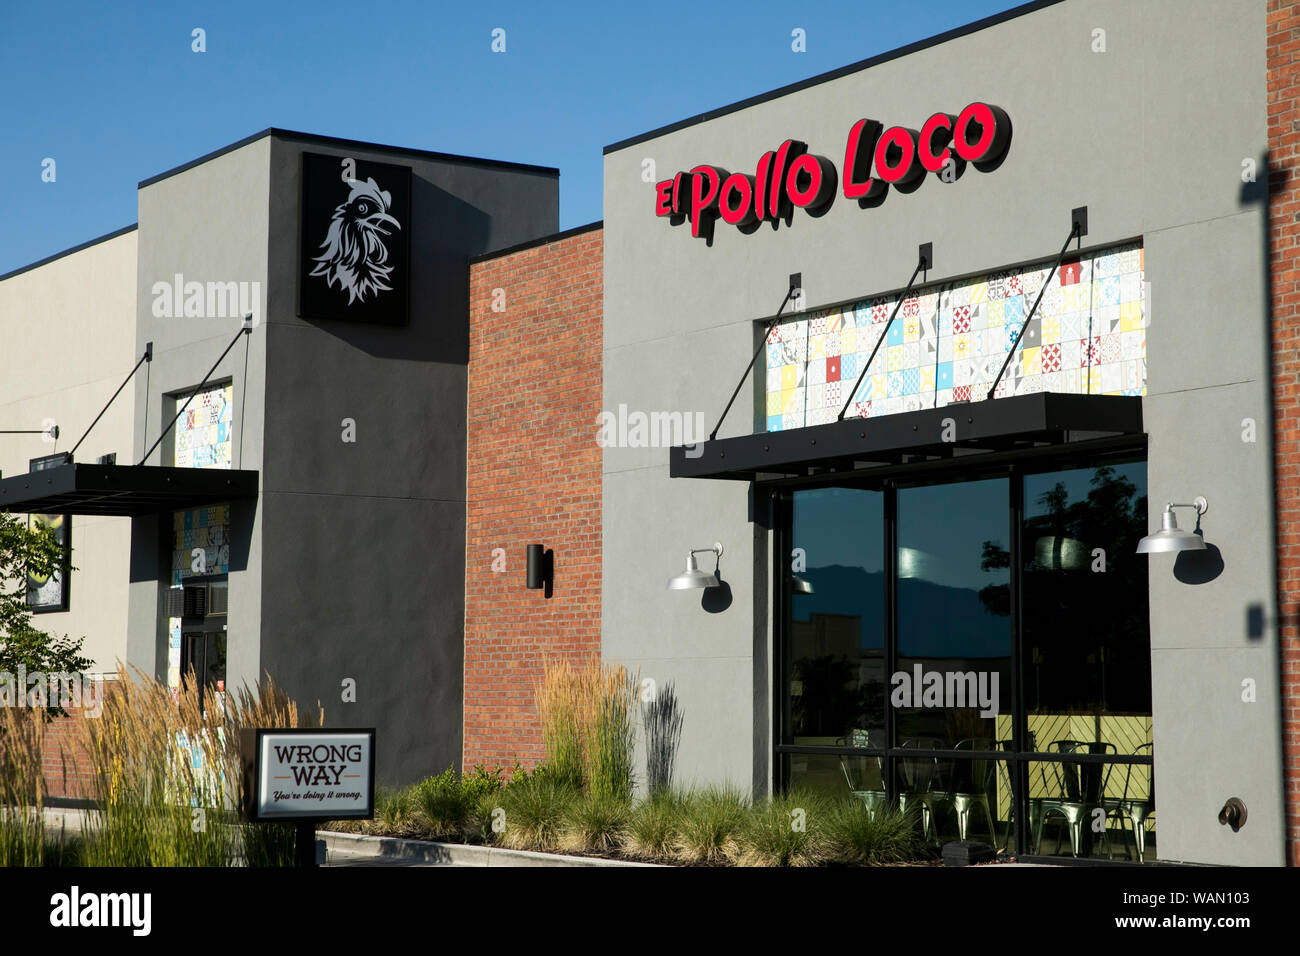 Ein logo Zeichen außerhalb eines El Pollo Loco fast food Restaurant Lage in Orem, Utah am 29. Juli 2019. Stockfoto